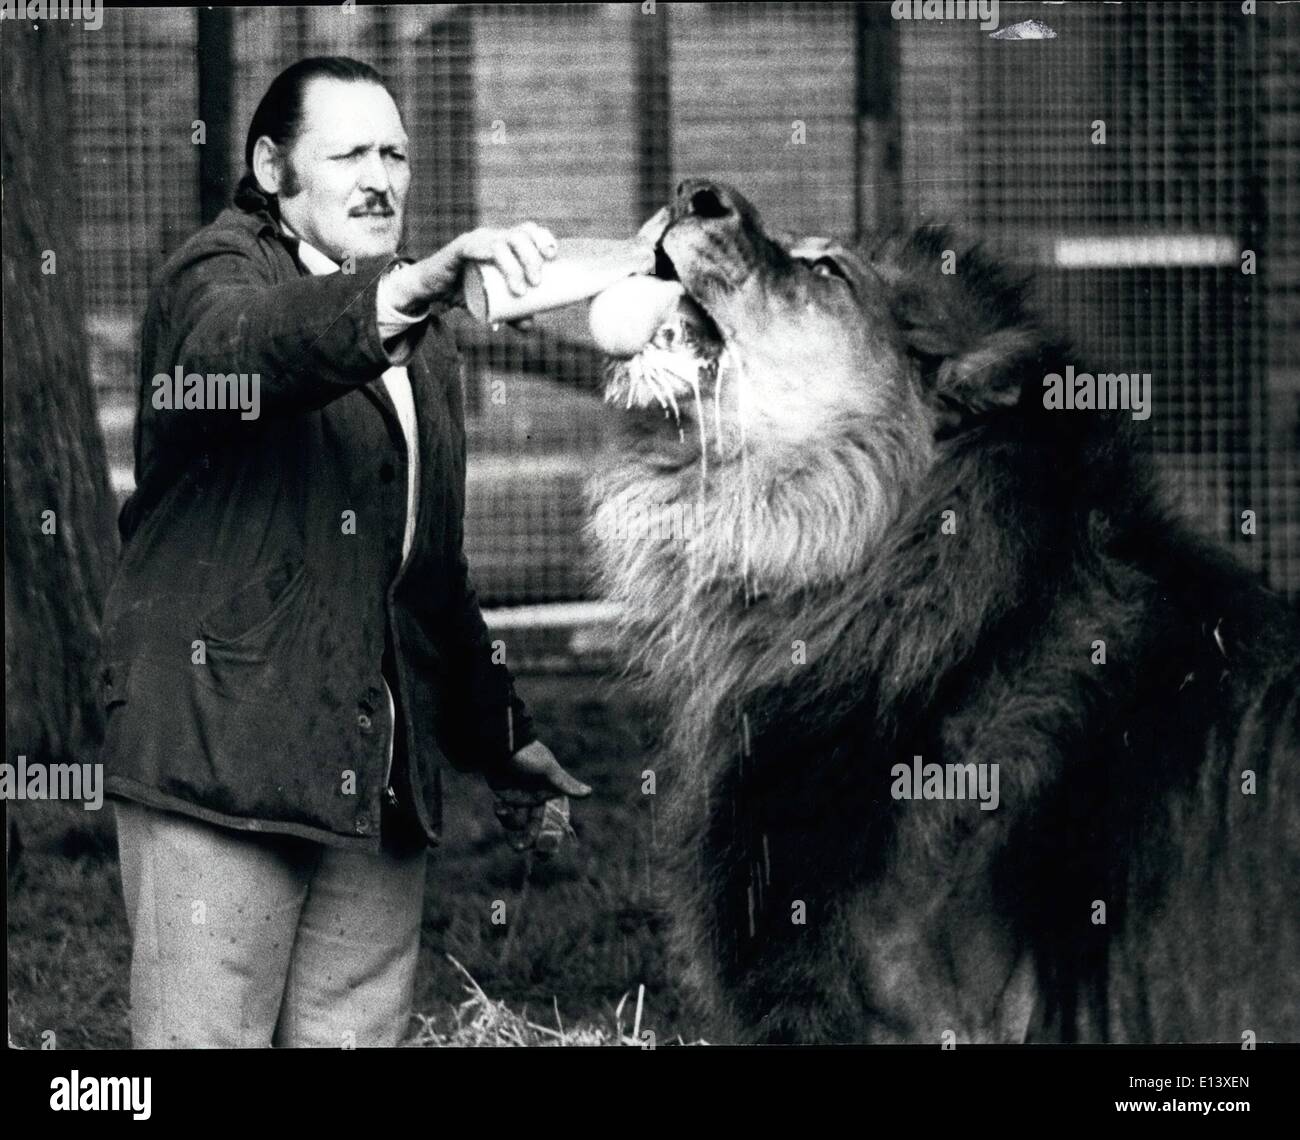 27 mars 2012 - Simba, le plus grand lion, consomme 10 litre de lait en plus de sa ration de viande tous les jours. Serviettes de table ne sont pas Banque D'Images